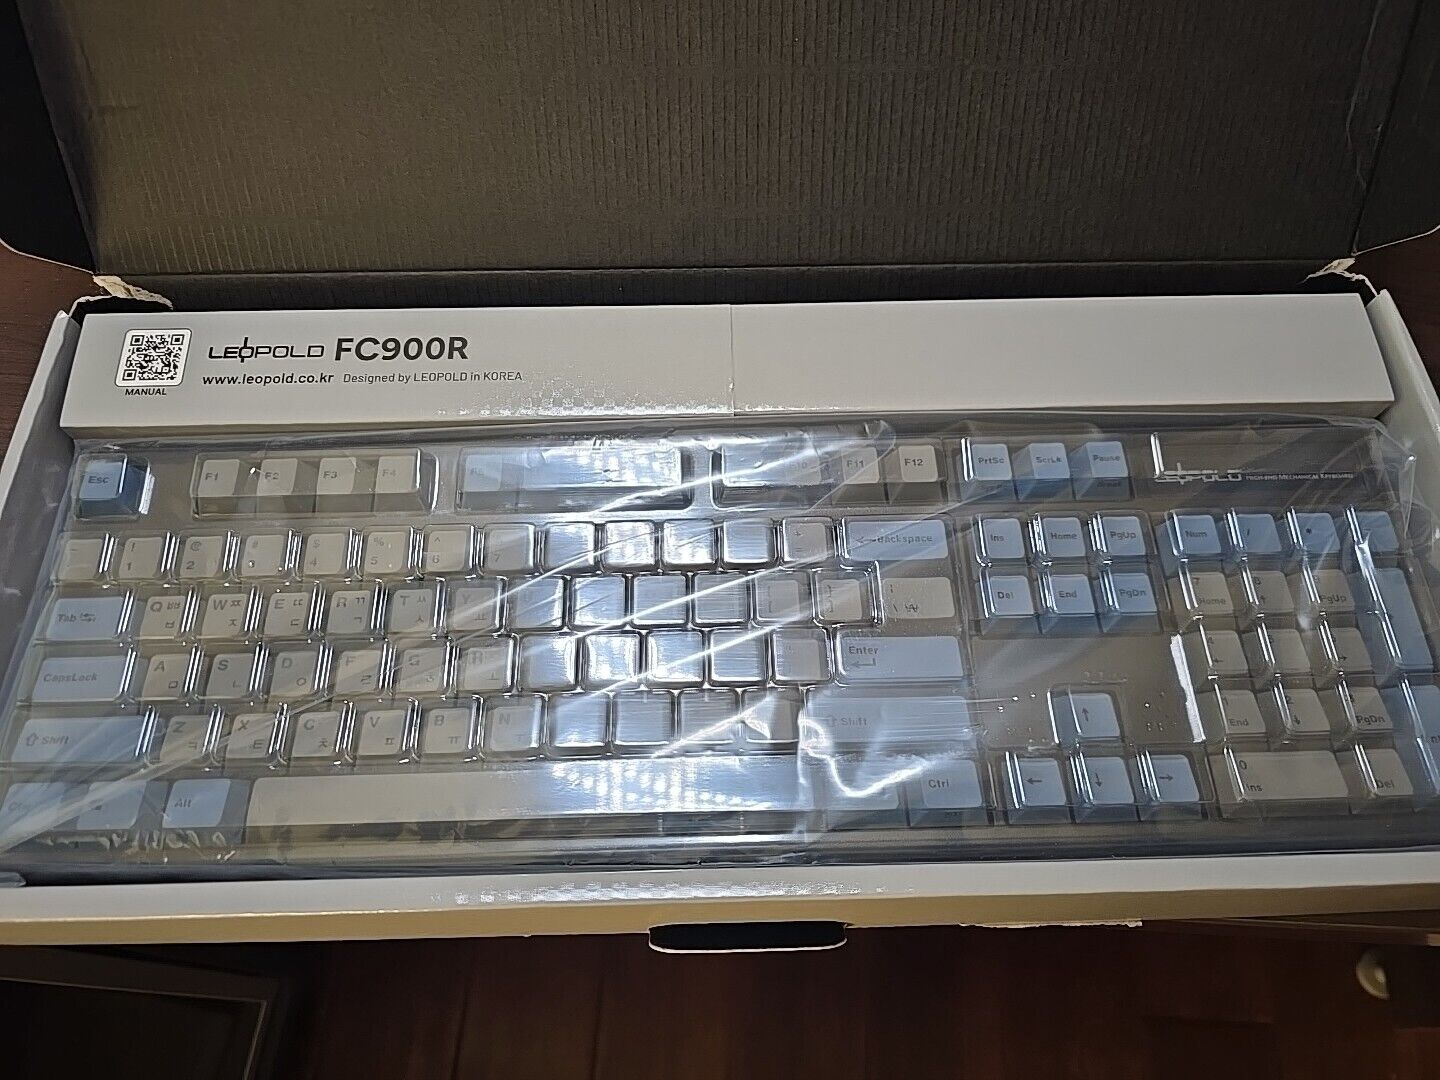 Leopold FC900R PD 104KEYS HIG-END Mechanical Keyboard